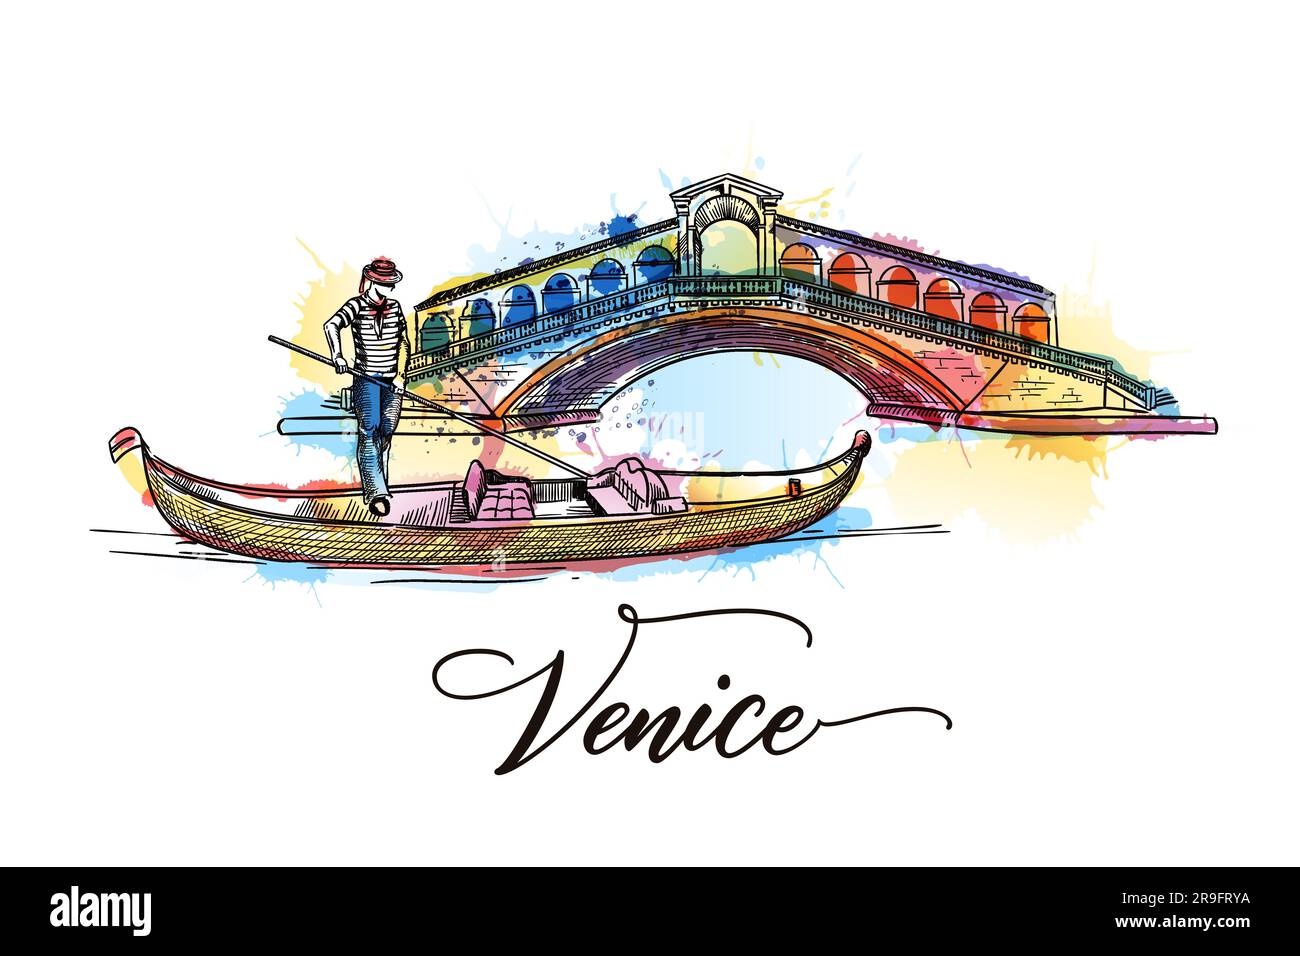 Voyage en Italie affiche de Venise, carte de voeux, imprimé avec des lettres calligraphiques dessinées à la main. Illustration vectorielle du pont du Rialto, de la gondole, de gondo Illustration de Vecteur